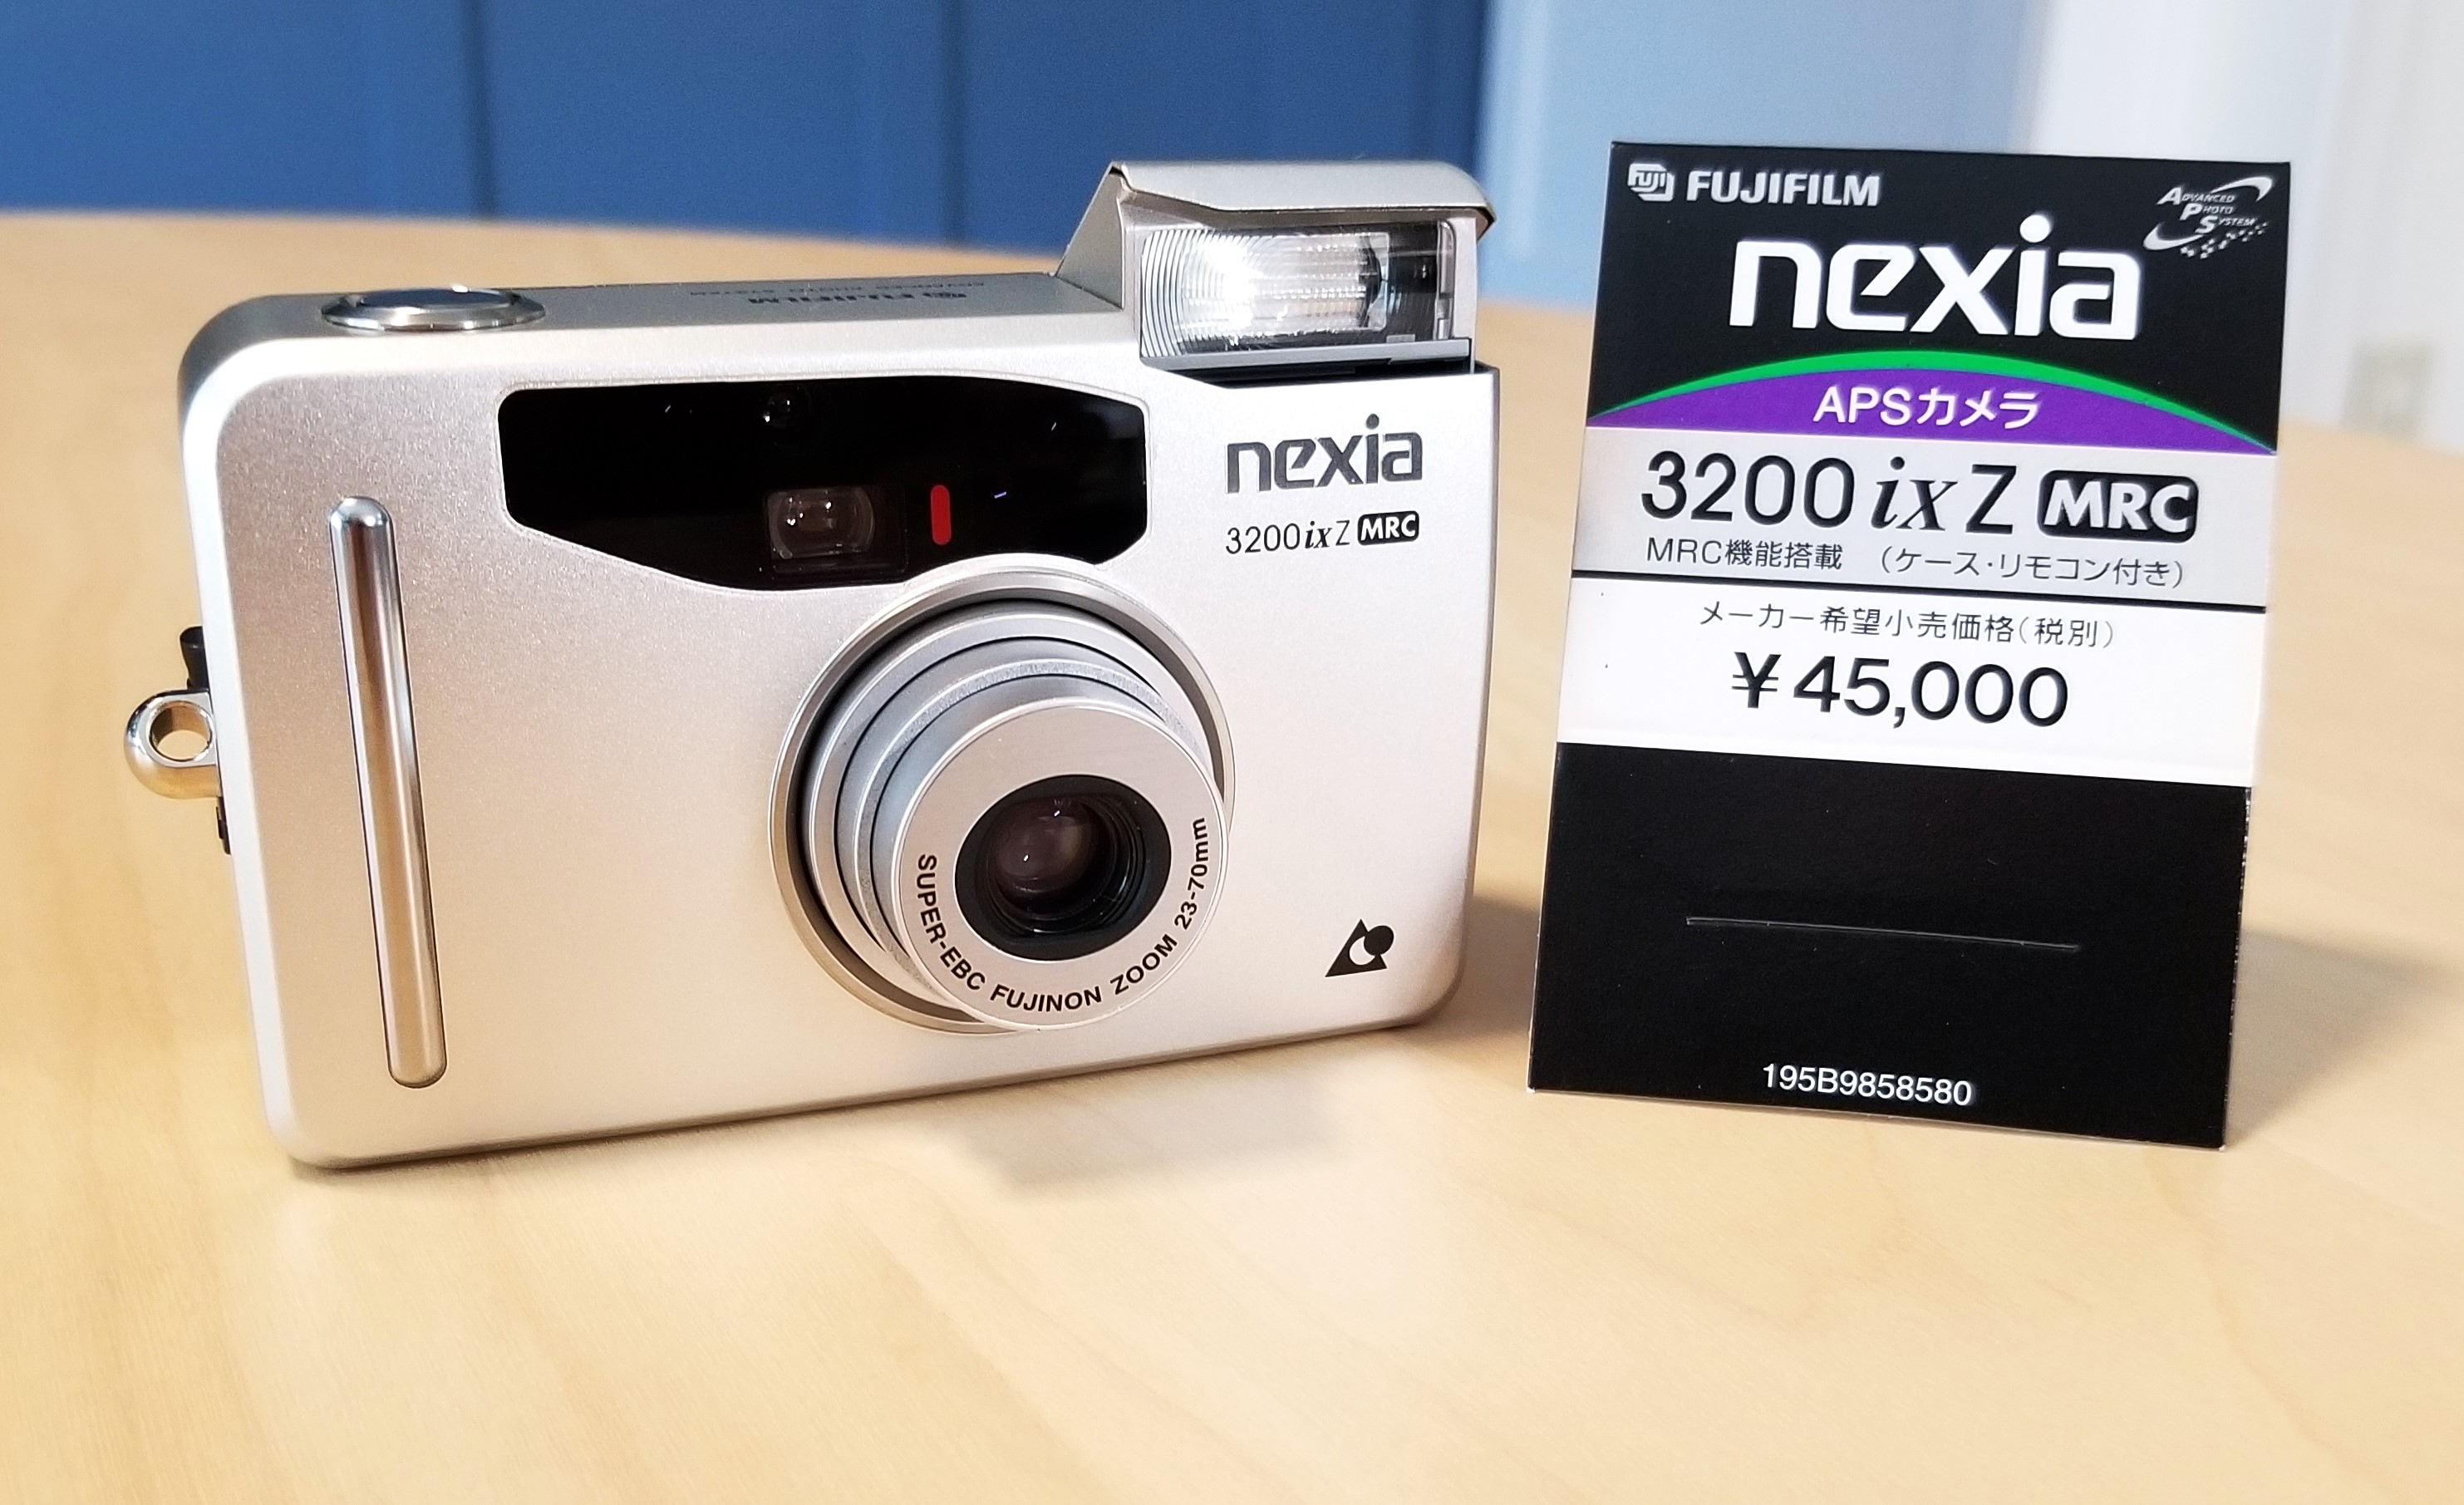 Fujifilm Nexia Cameras – 3200 ixZ | Chasing Classic Cameras with Chris